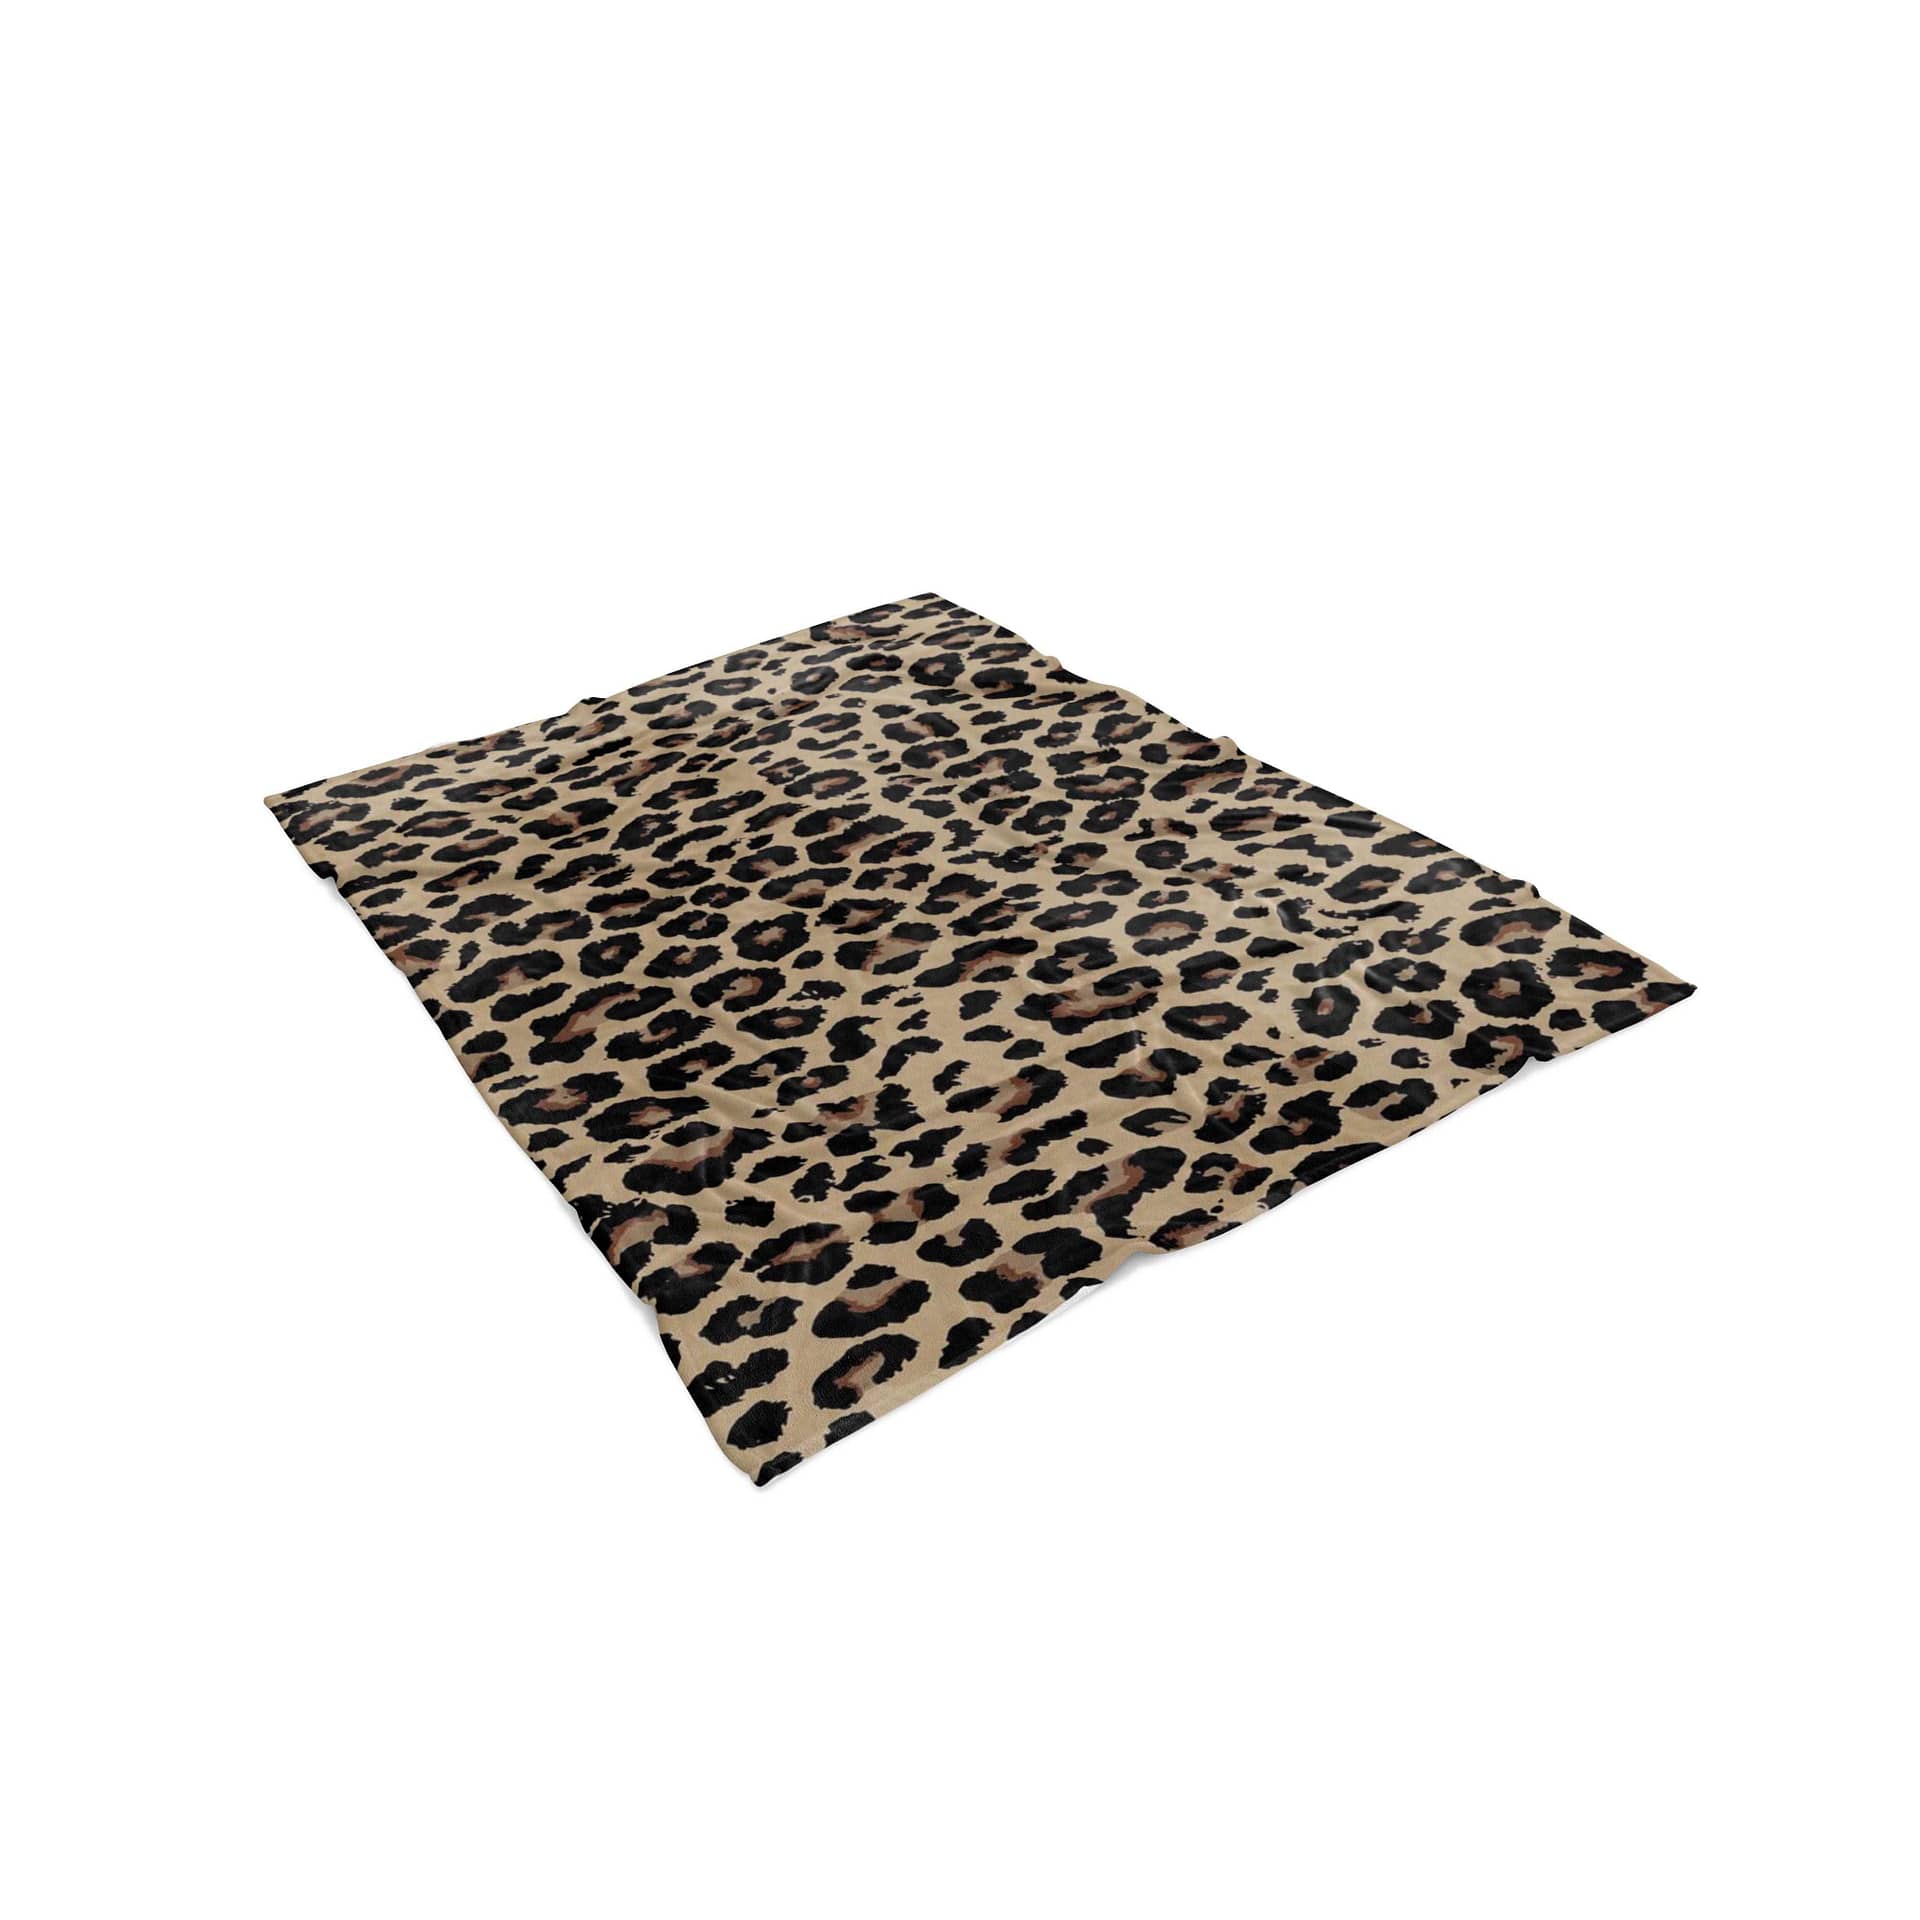 Inktee Store - Leopard Skin Living Room Area Amazon No4012 Fleece Blanket Image